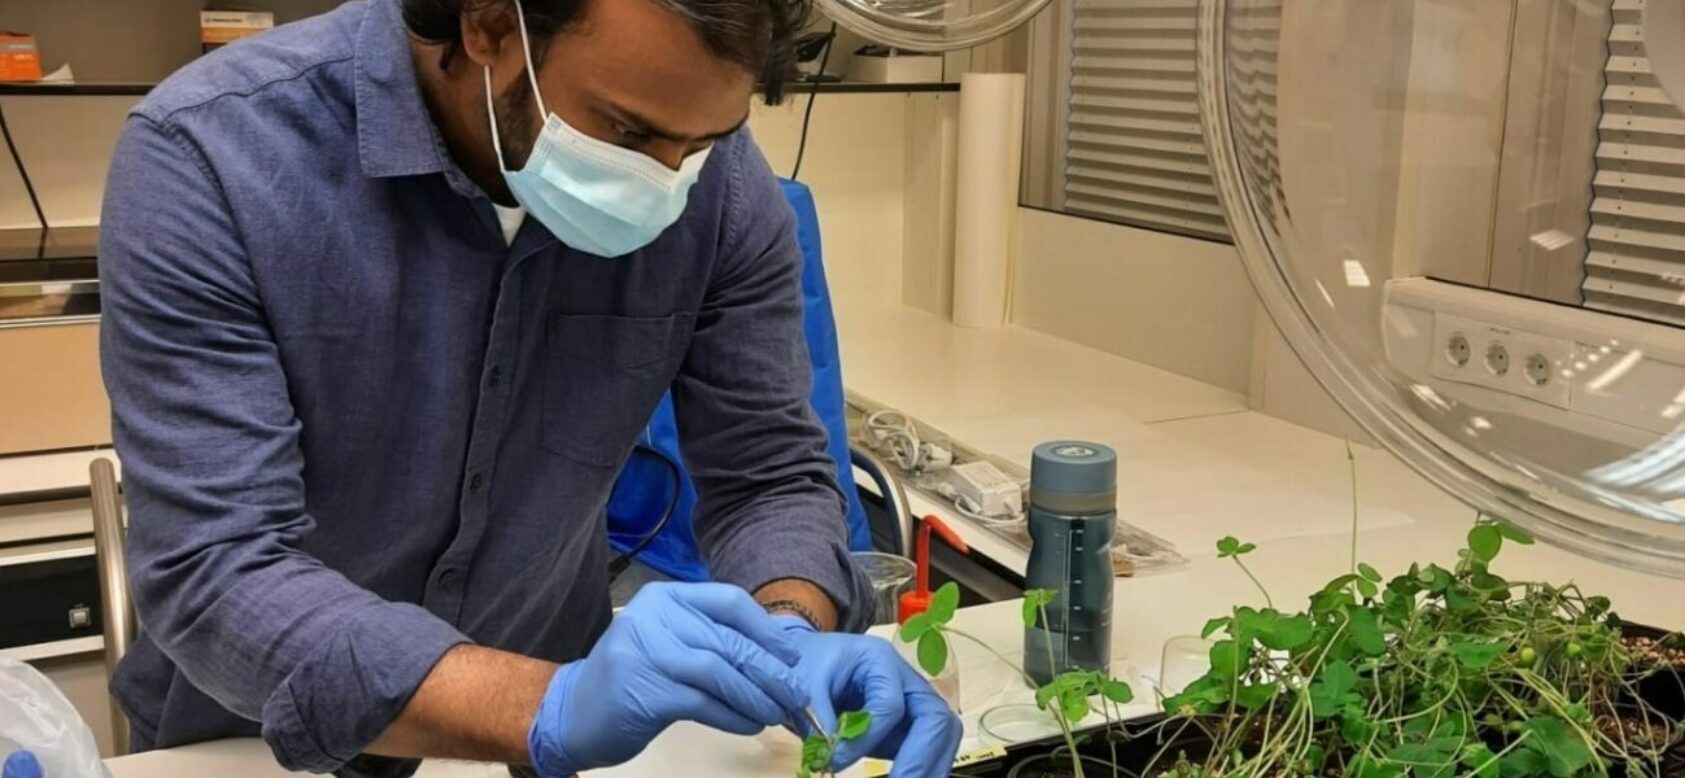 , , Foodprint lab1, , En mann kledd i lab-frakk, hansker og munnbind tar prøver av grønne planter